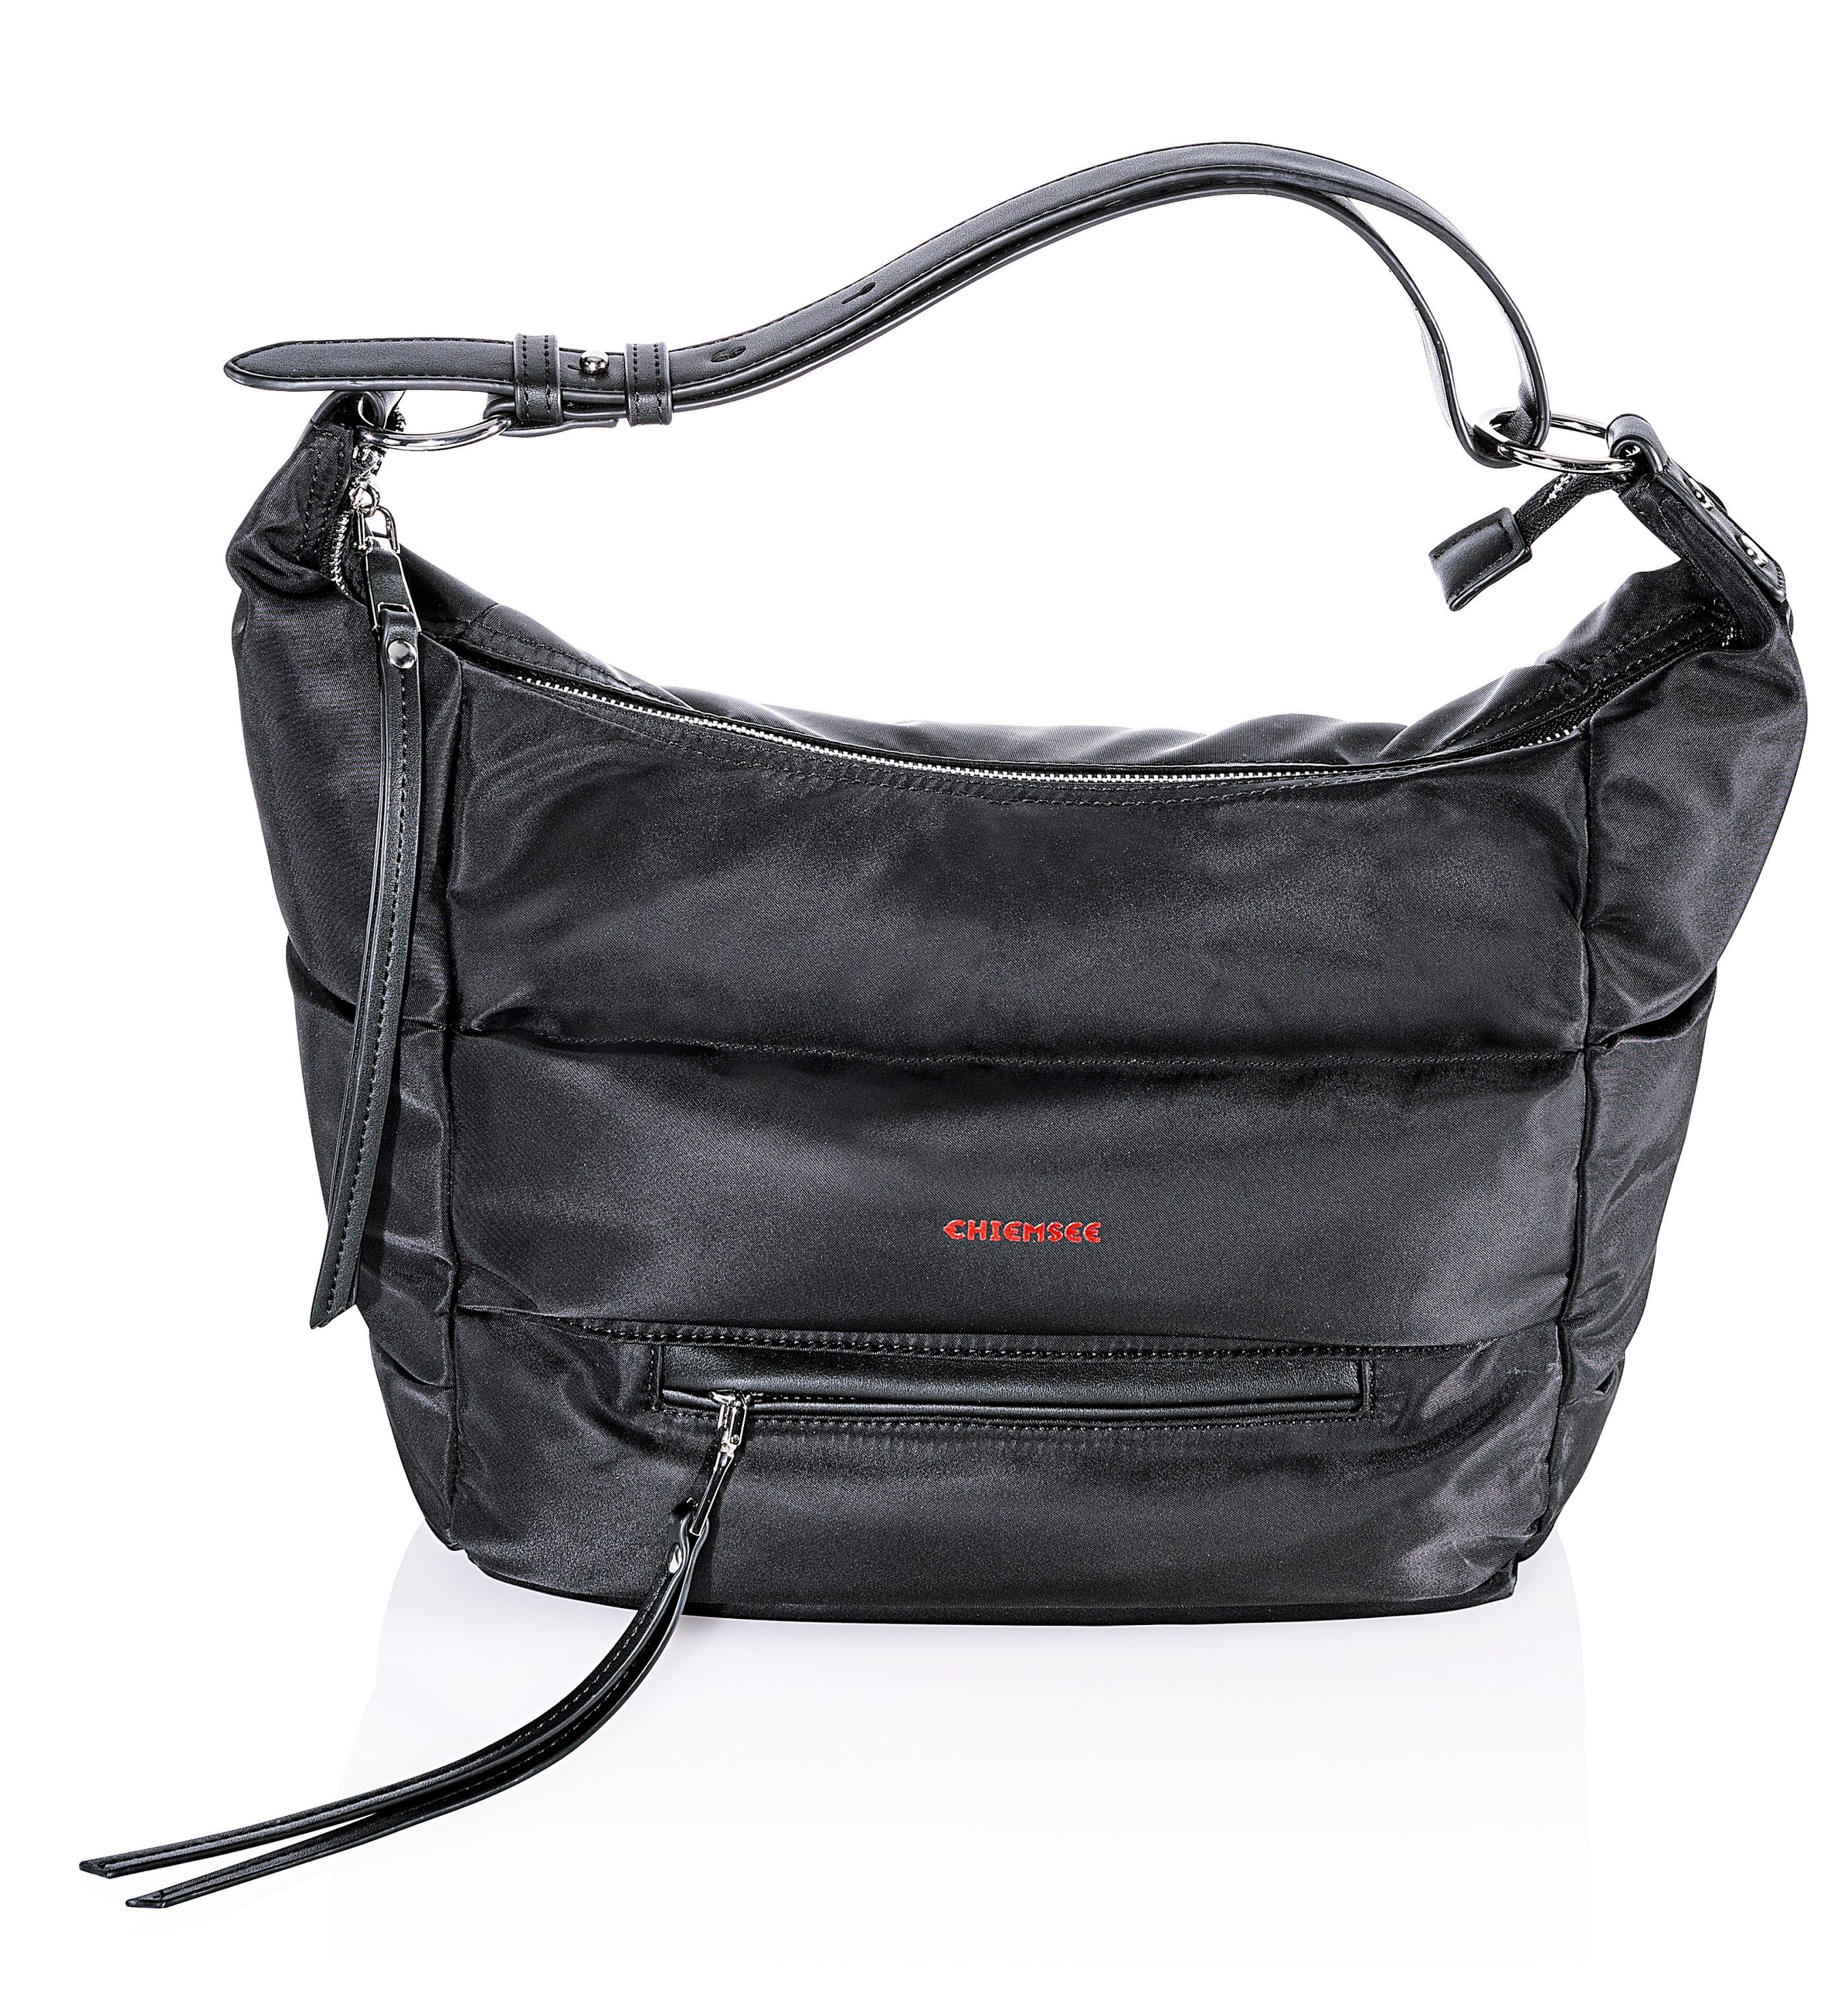 Chiemsee Damen Tasche Farbe: schwarz bestellen | Weltbild.at